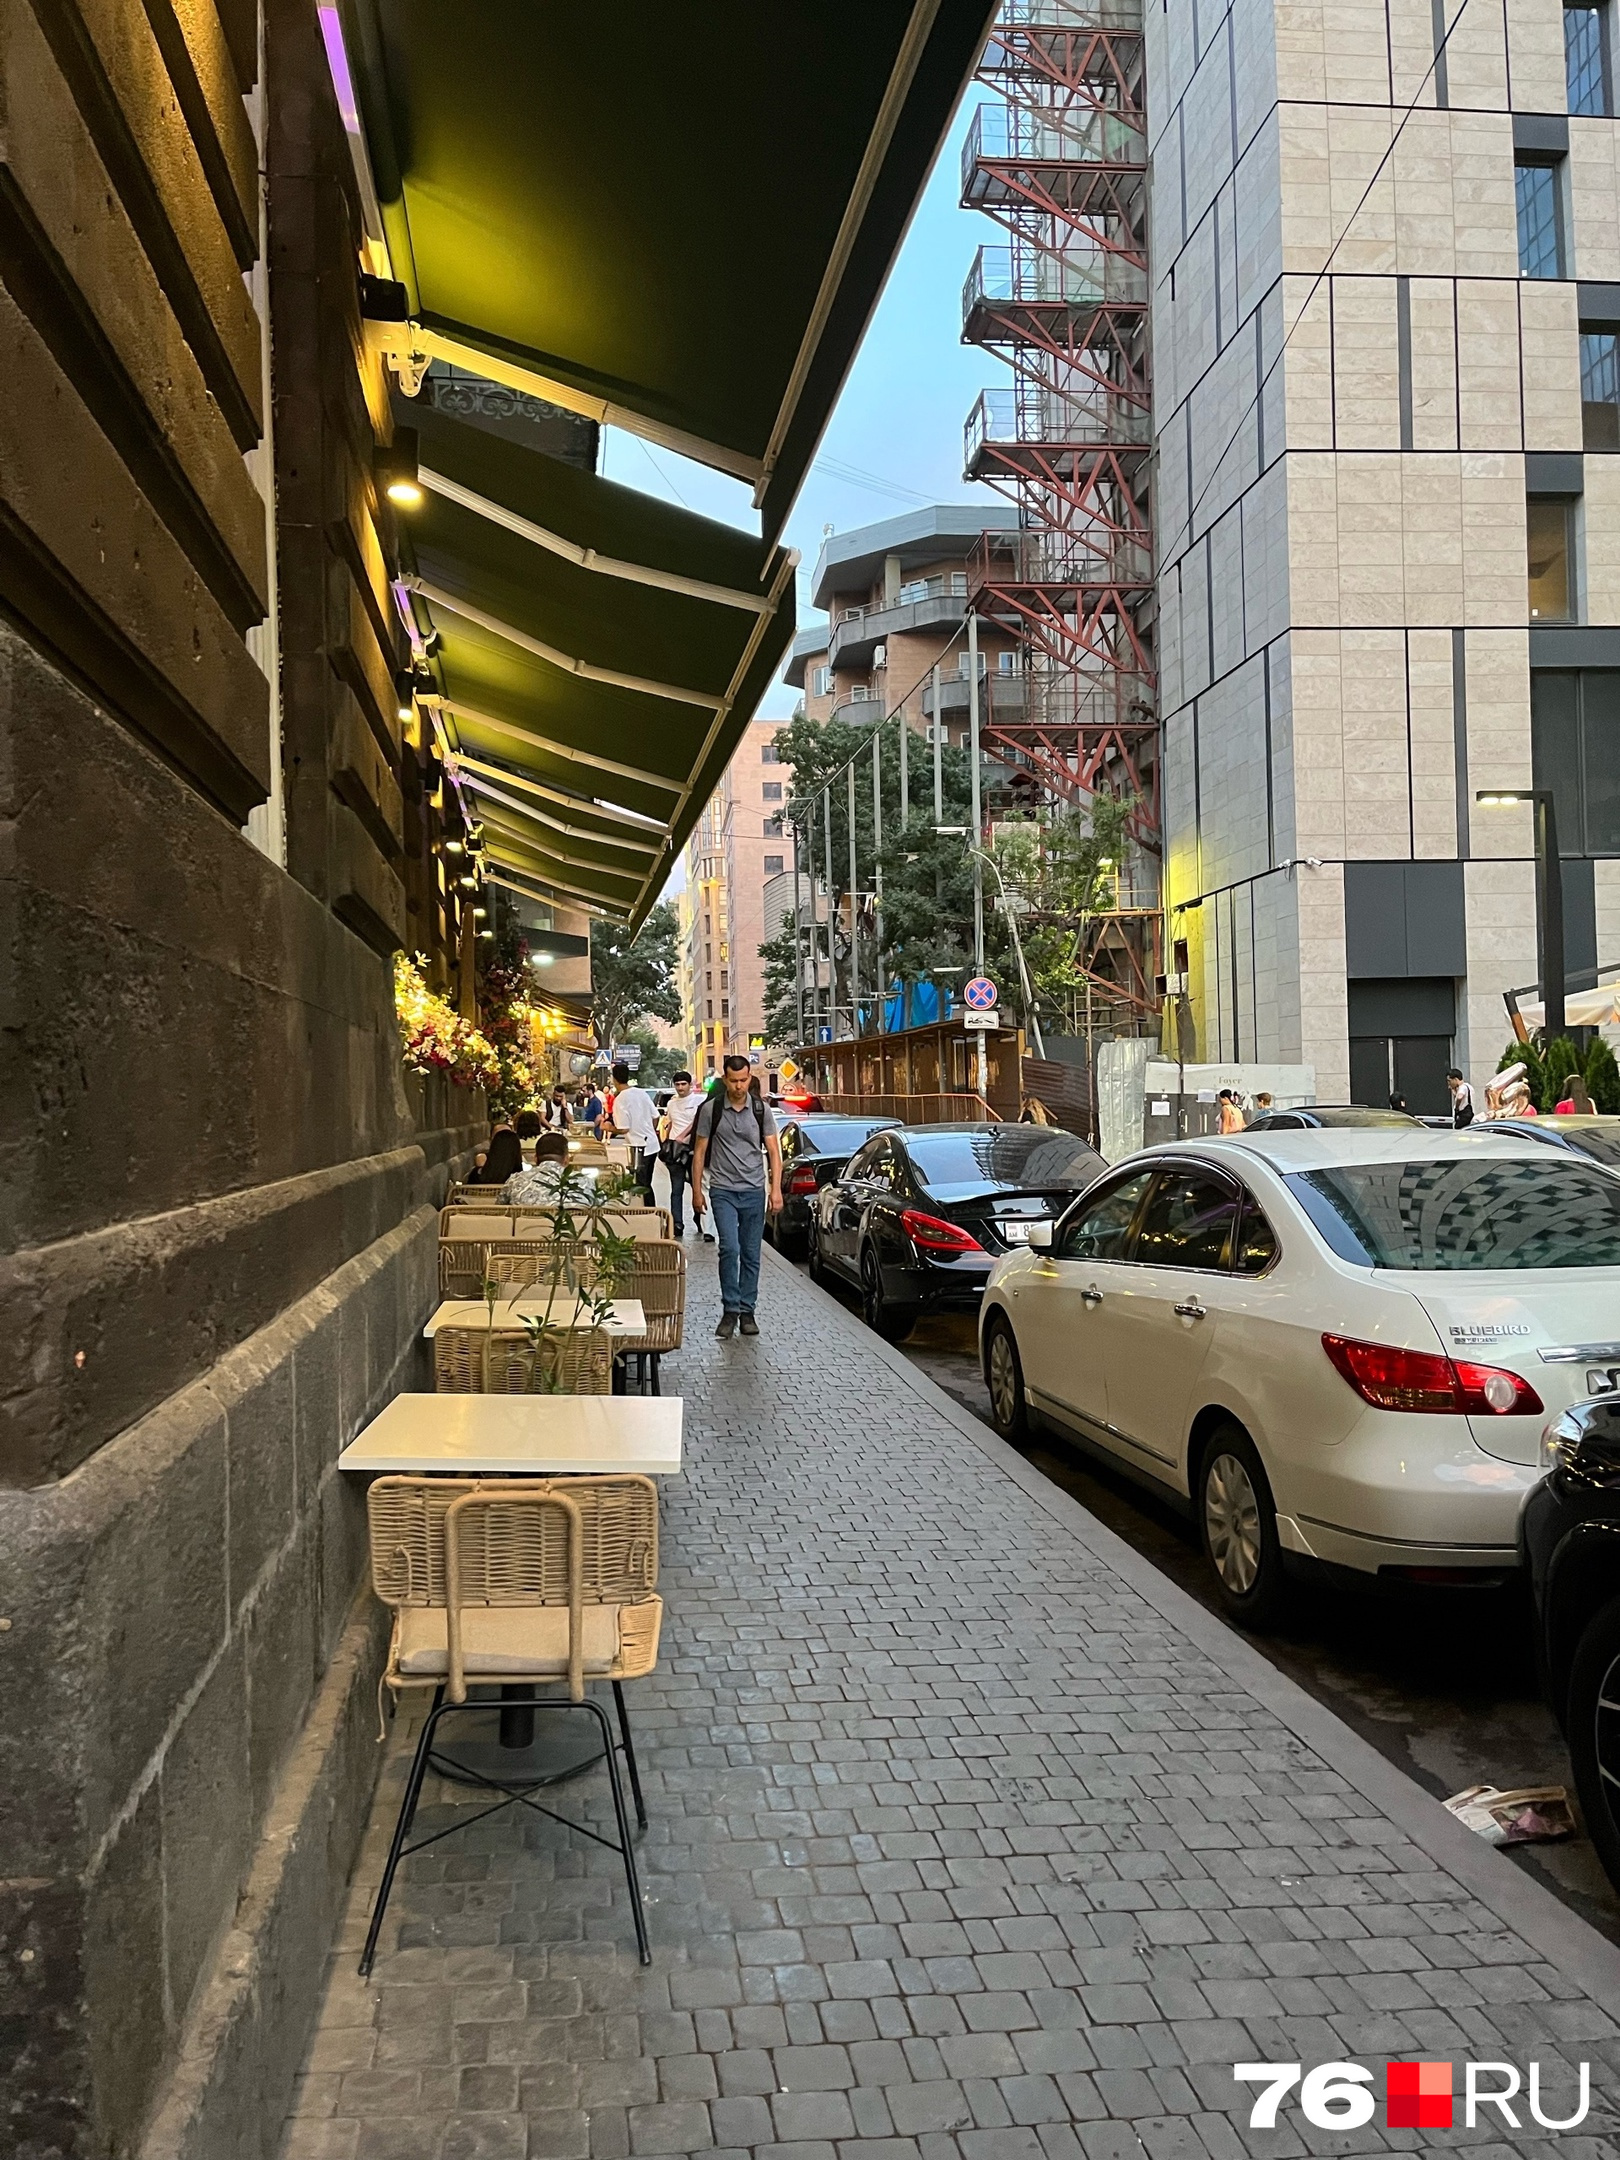 В Ереване старого города нет. Застройка центра монументальная. Много уличных кафе, правда, вид портят запаркованные улицы